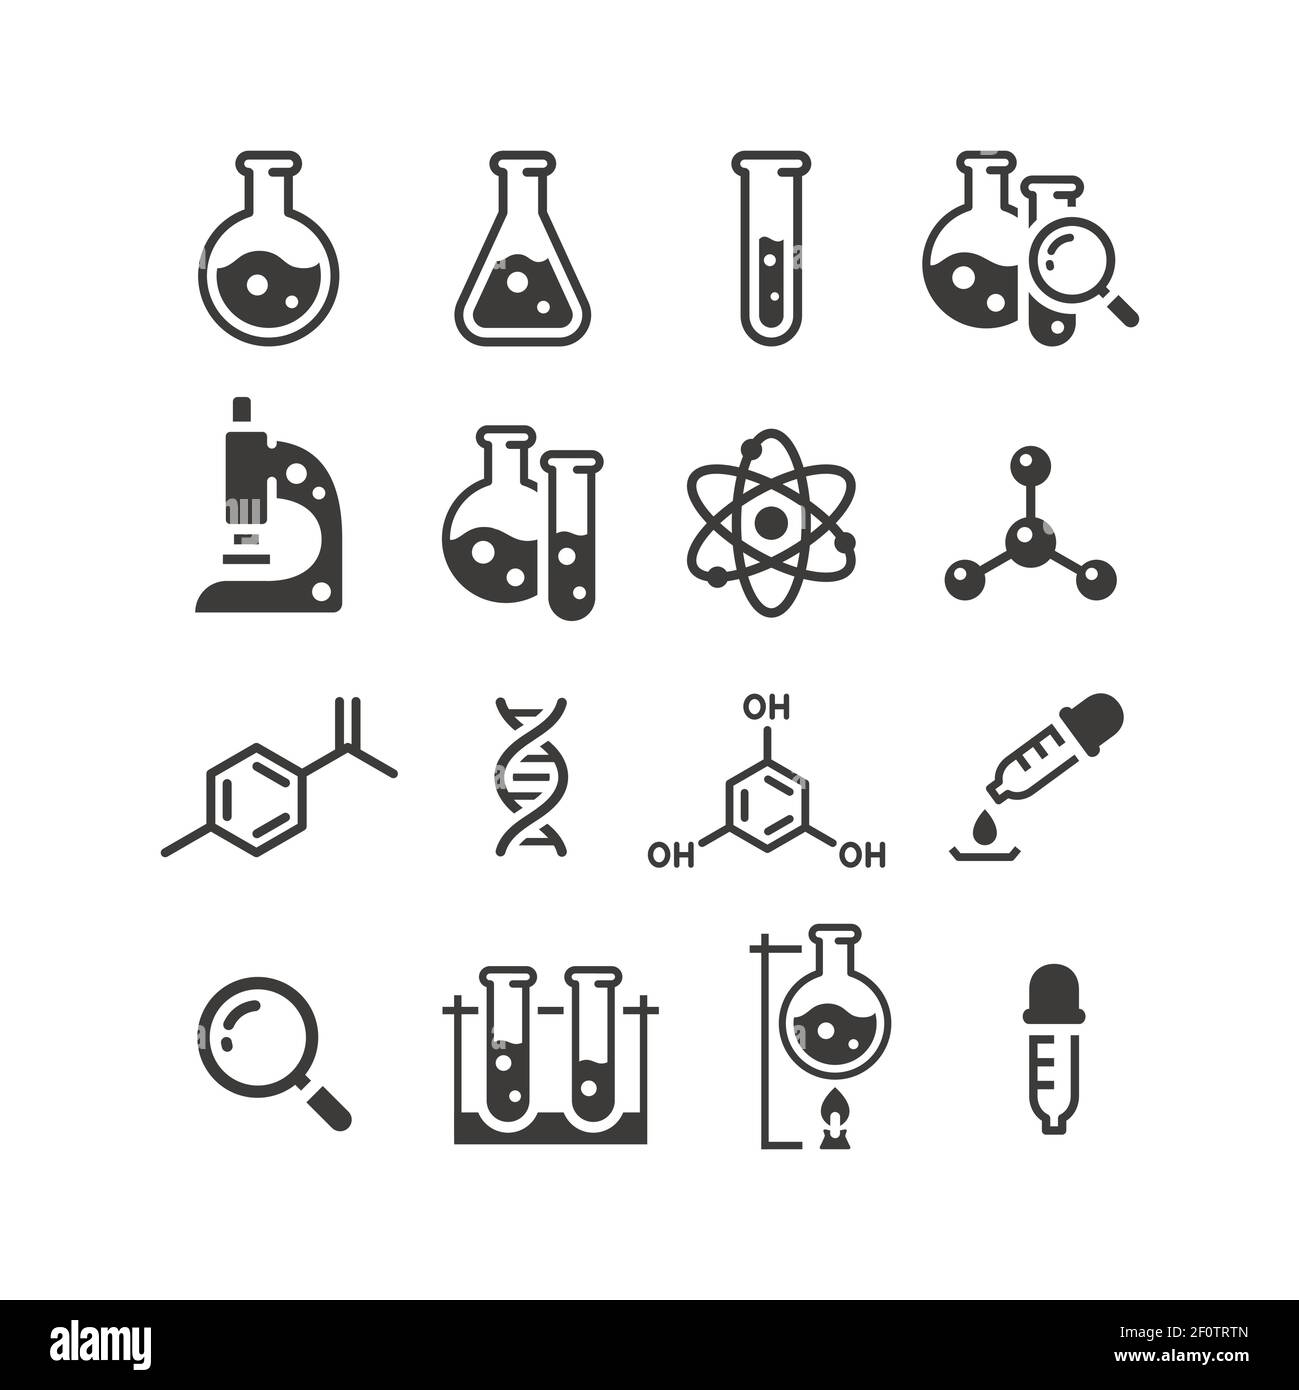 Schwarzer Vektor-Symbolsatz für Chemie und Wissenschaft. Reagenzgläser, Mikroskop, Atom- und Molekülsymbole. Stock Vektor